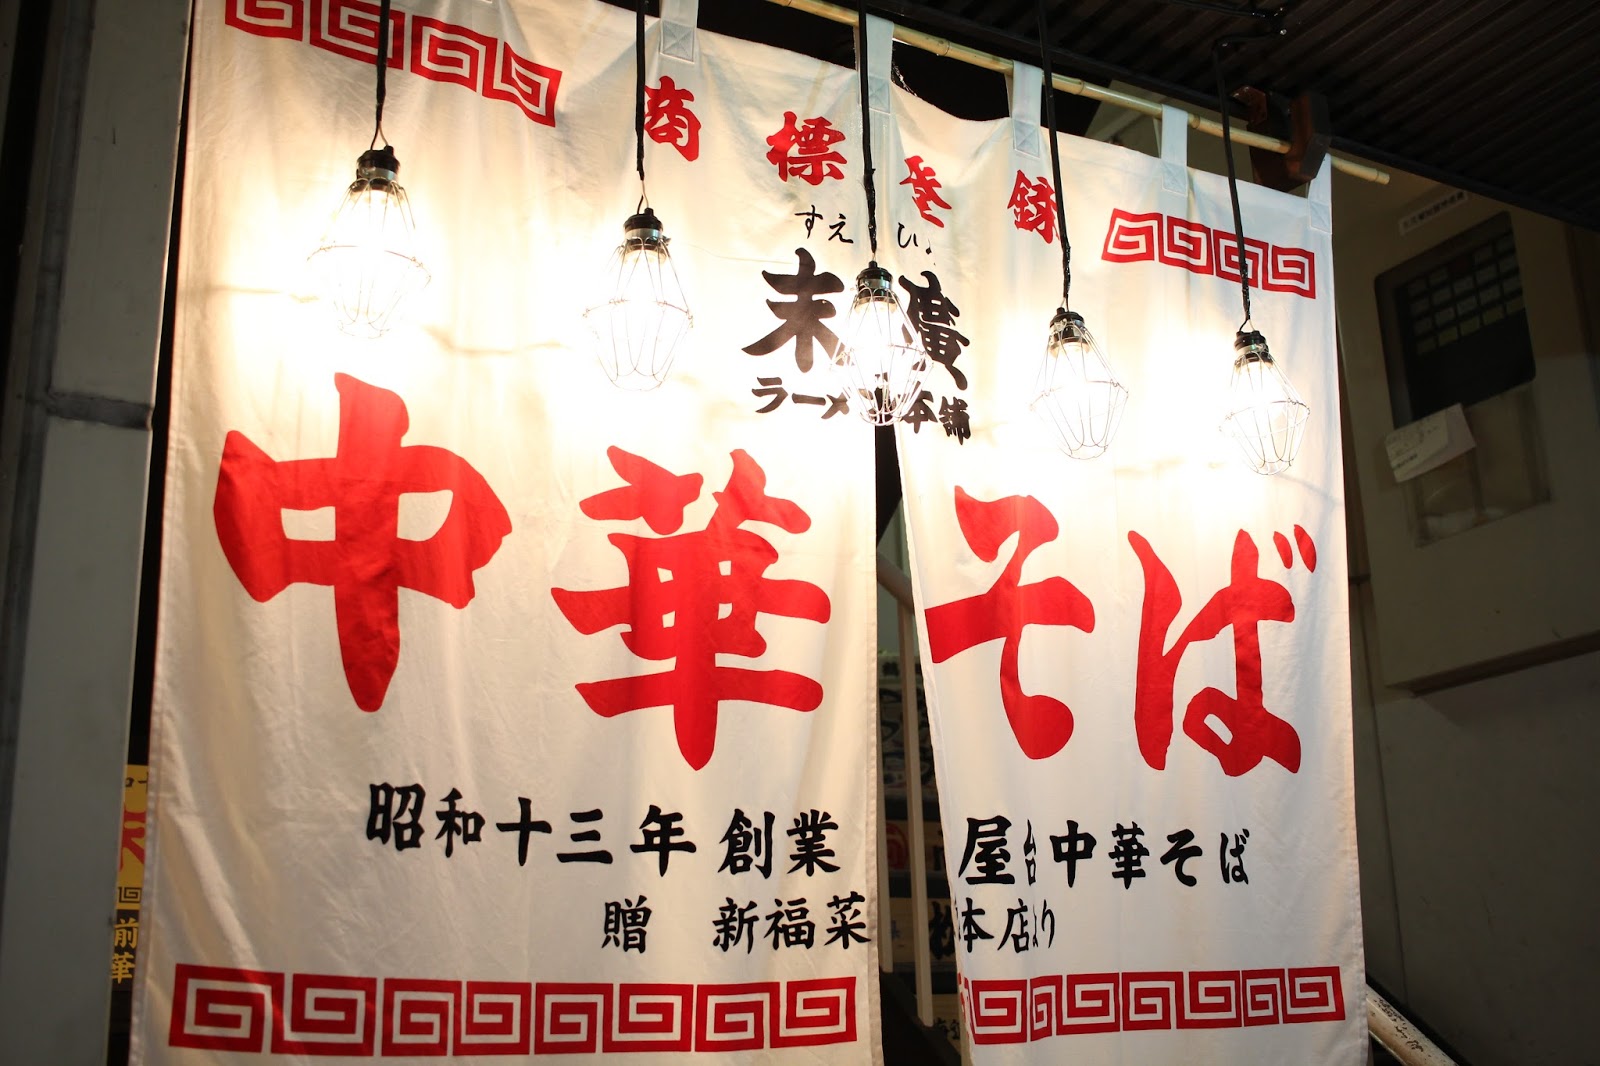 林公子生活遊記 仙台美食末廣拉麵本鋪末廣ラーメン本舖昭和13年 1938年 創立的人氣美食